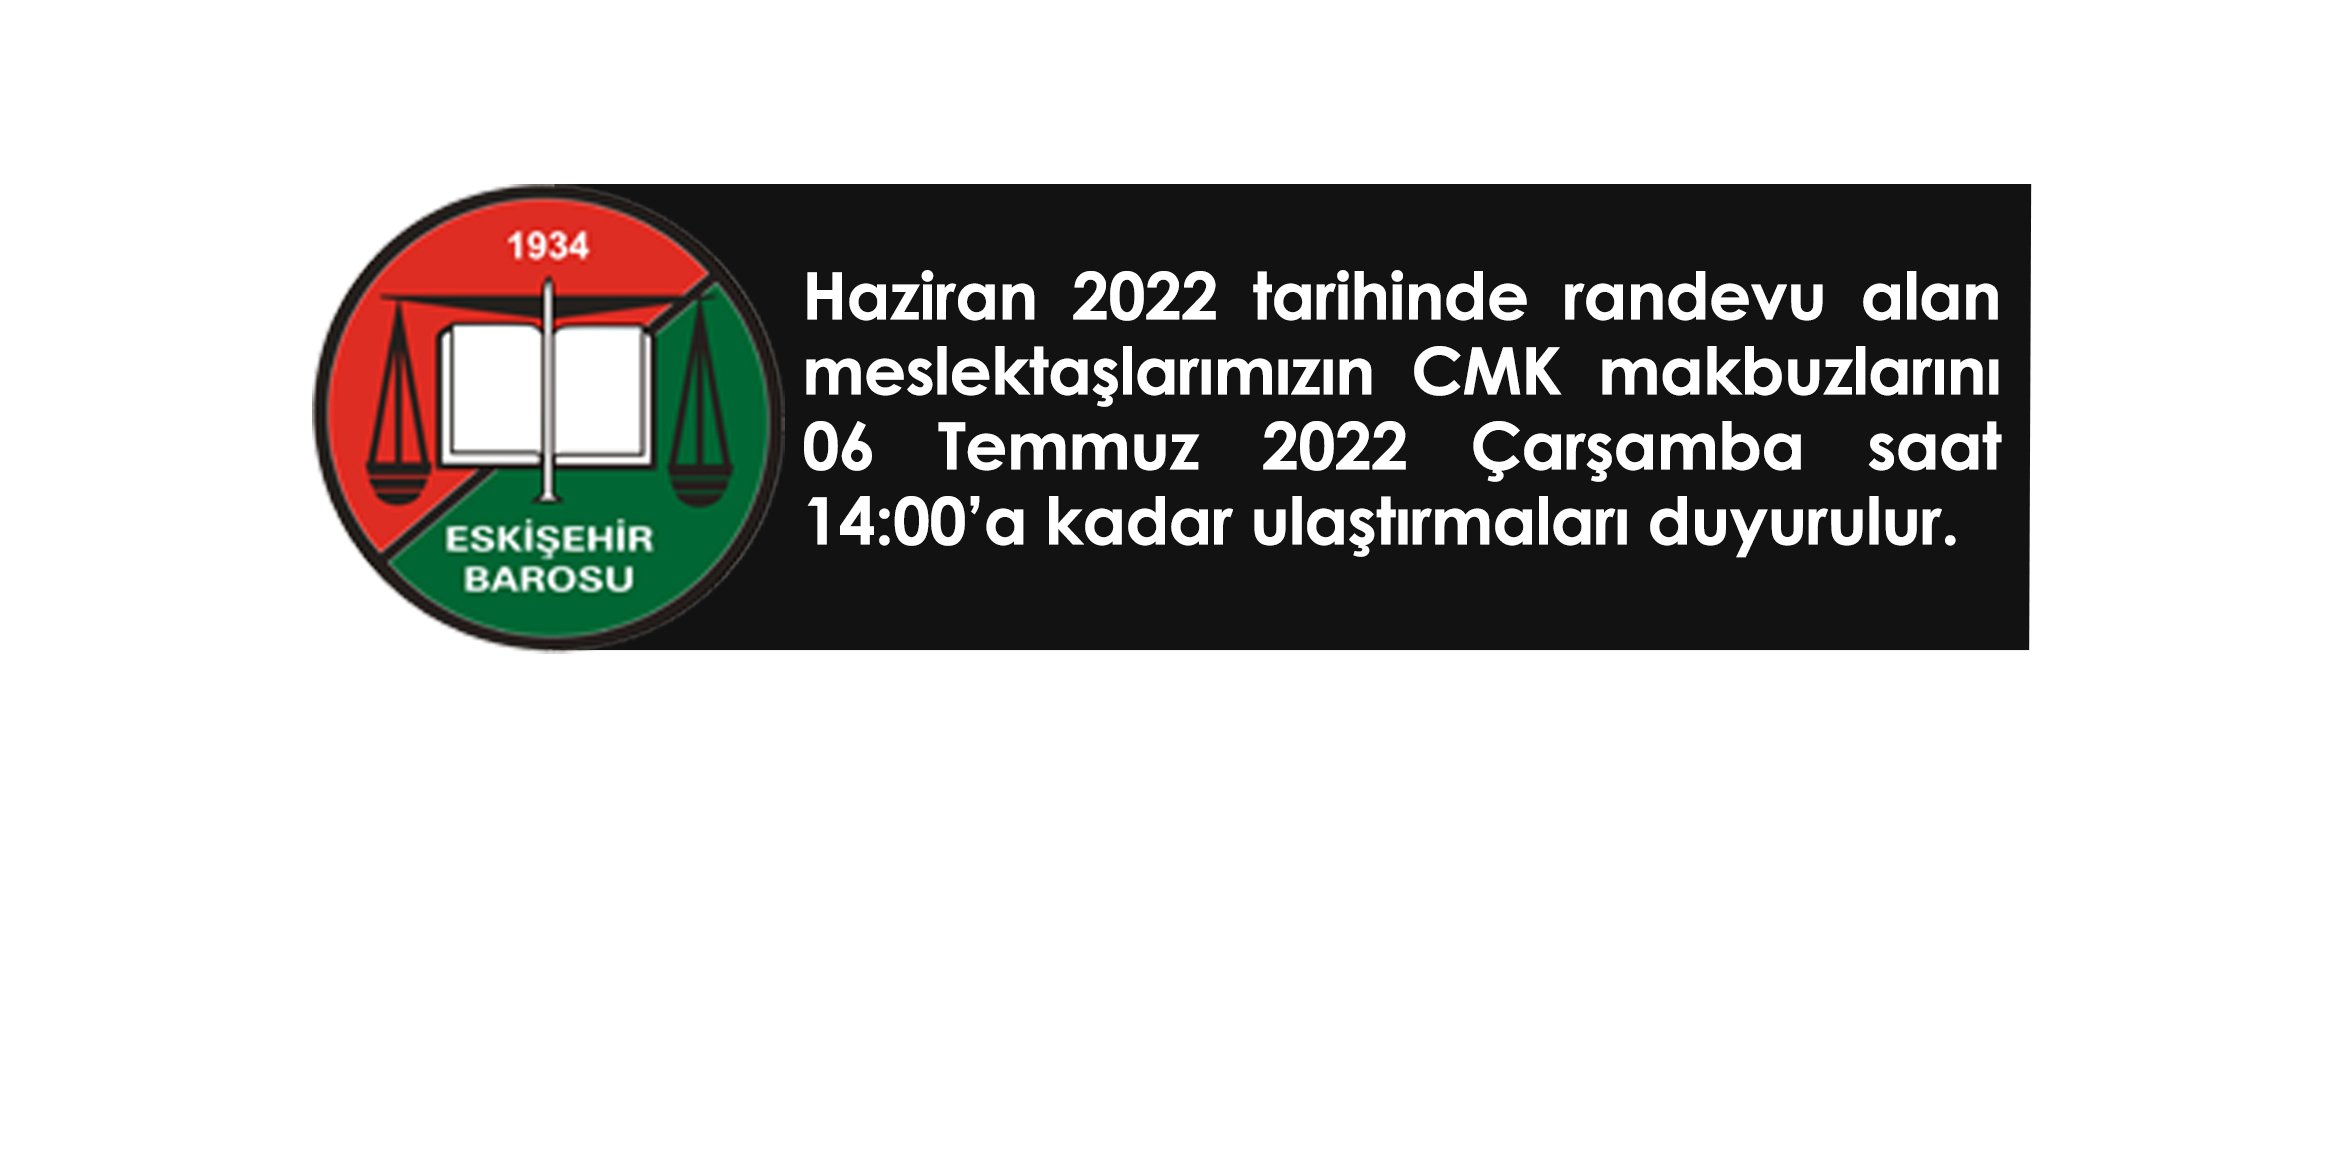 Haziran 2022 tarihinde randevu alan meslektaşlarımızın CMK makbuzlarını 06 Temmuz 2022 Çarşamba saat 14:00’a kadar ulaştırmaları duyurulur.